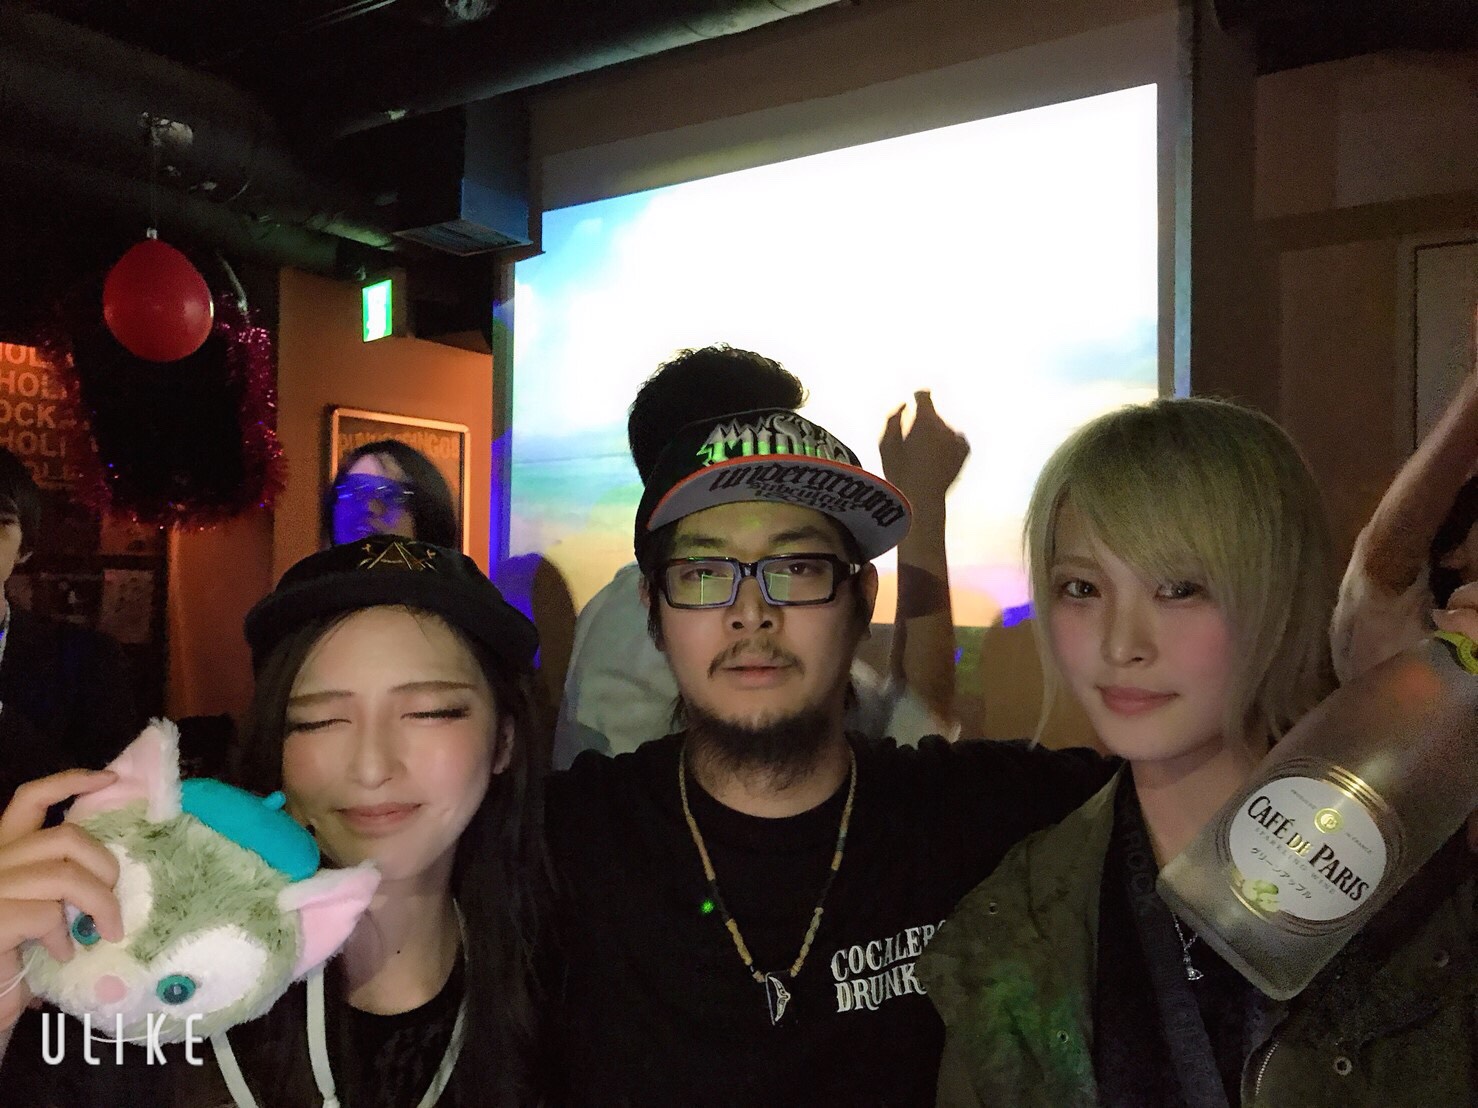 https://bar-rockaholic.jp/shibuya/blog/S__9814026.jpg